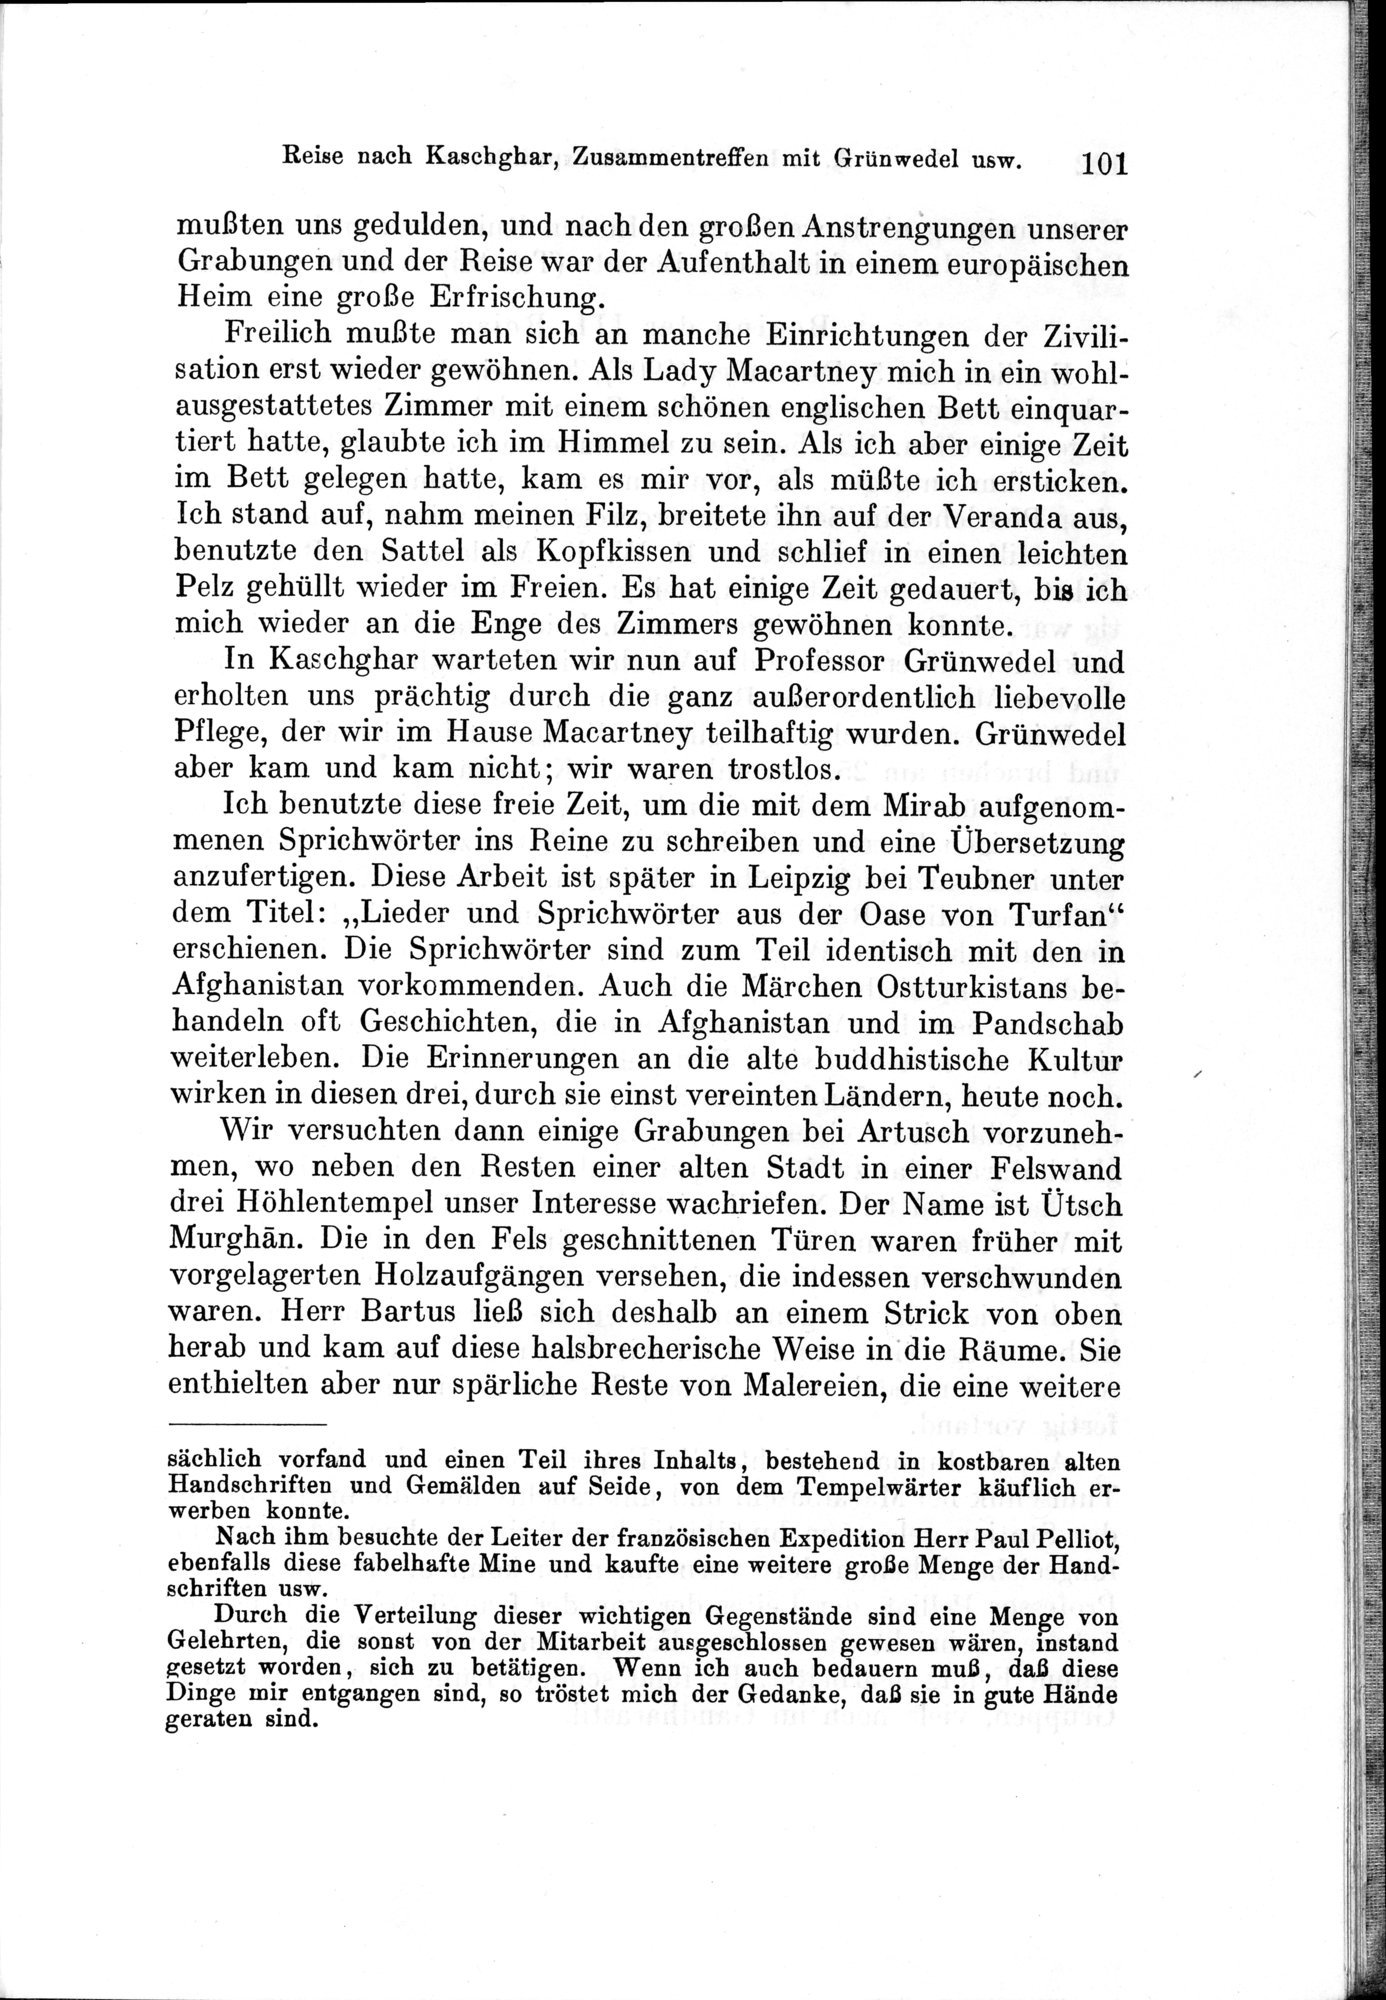 Auf Hellas Spuren in Ostturkistan : vol.1 / Page 147 (Grayscale High Resolution Image)